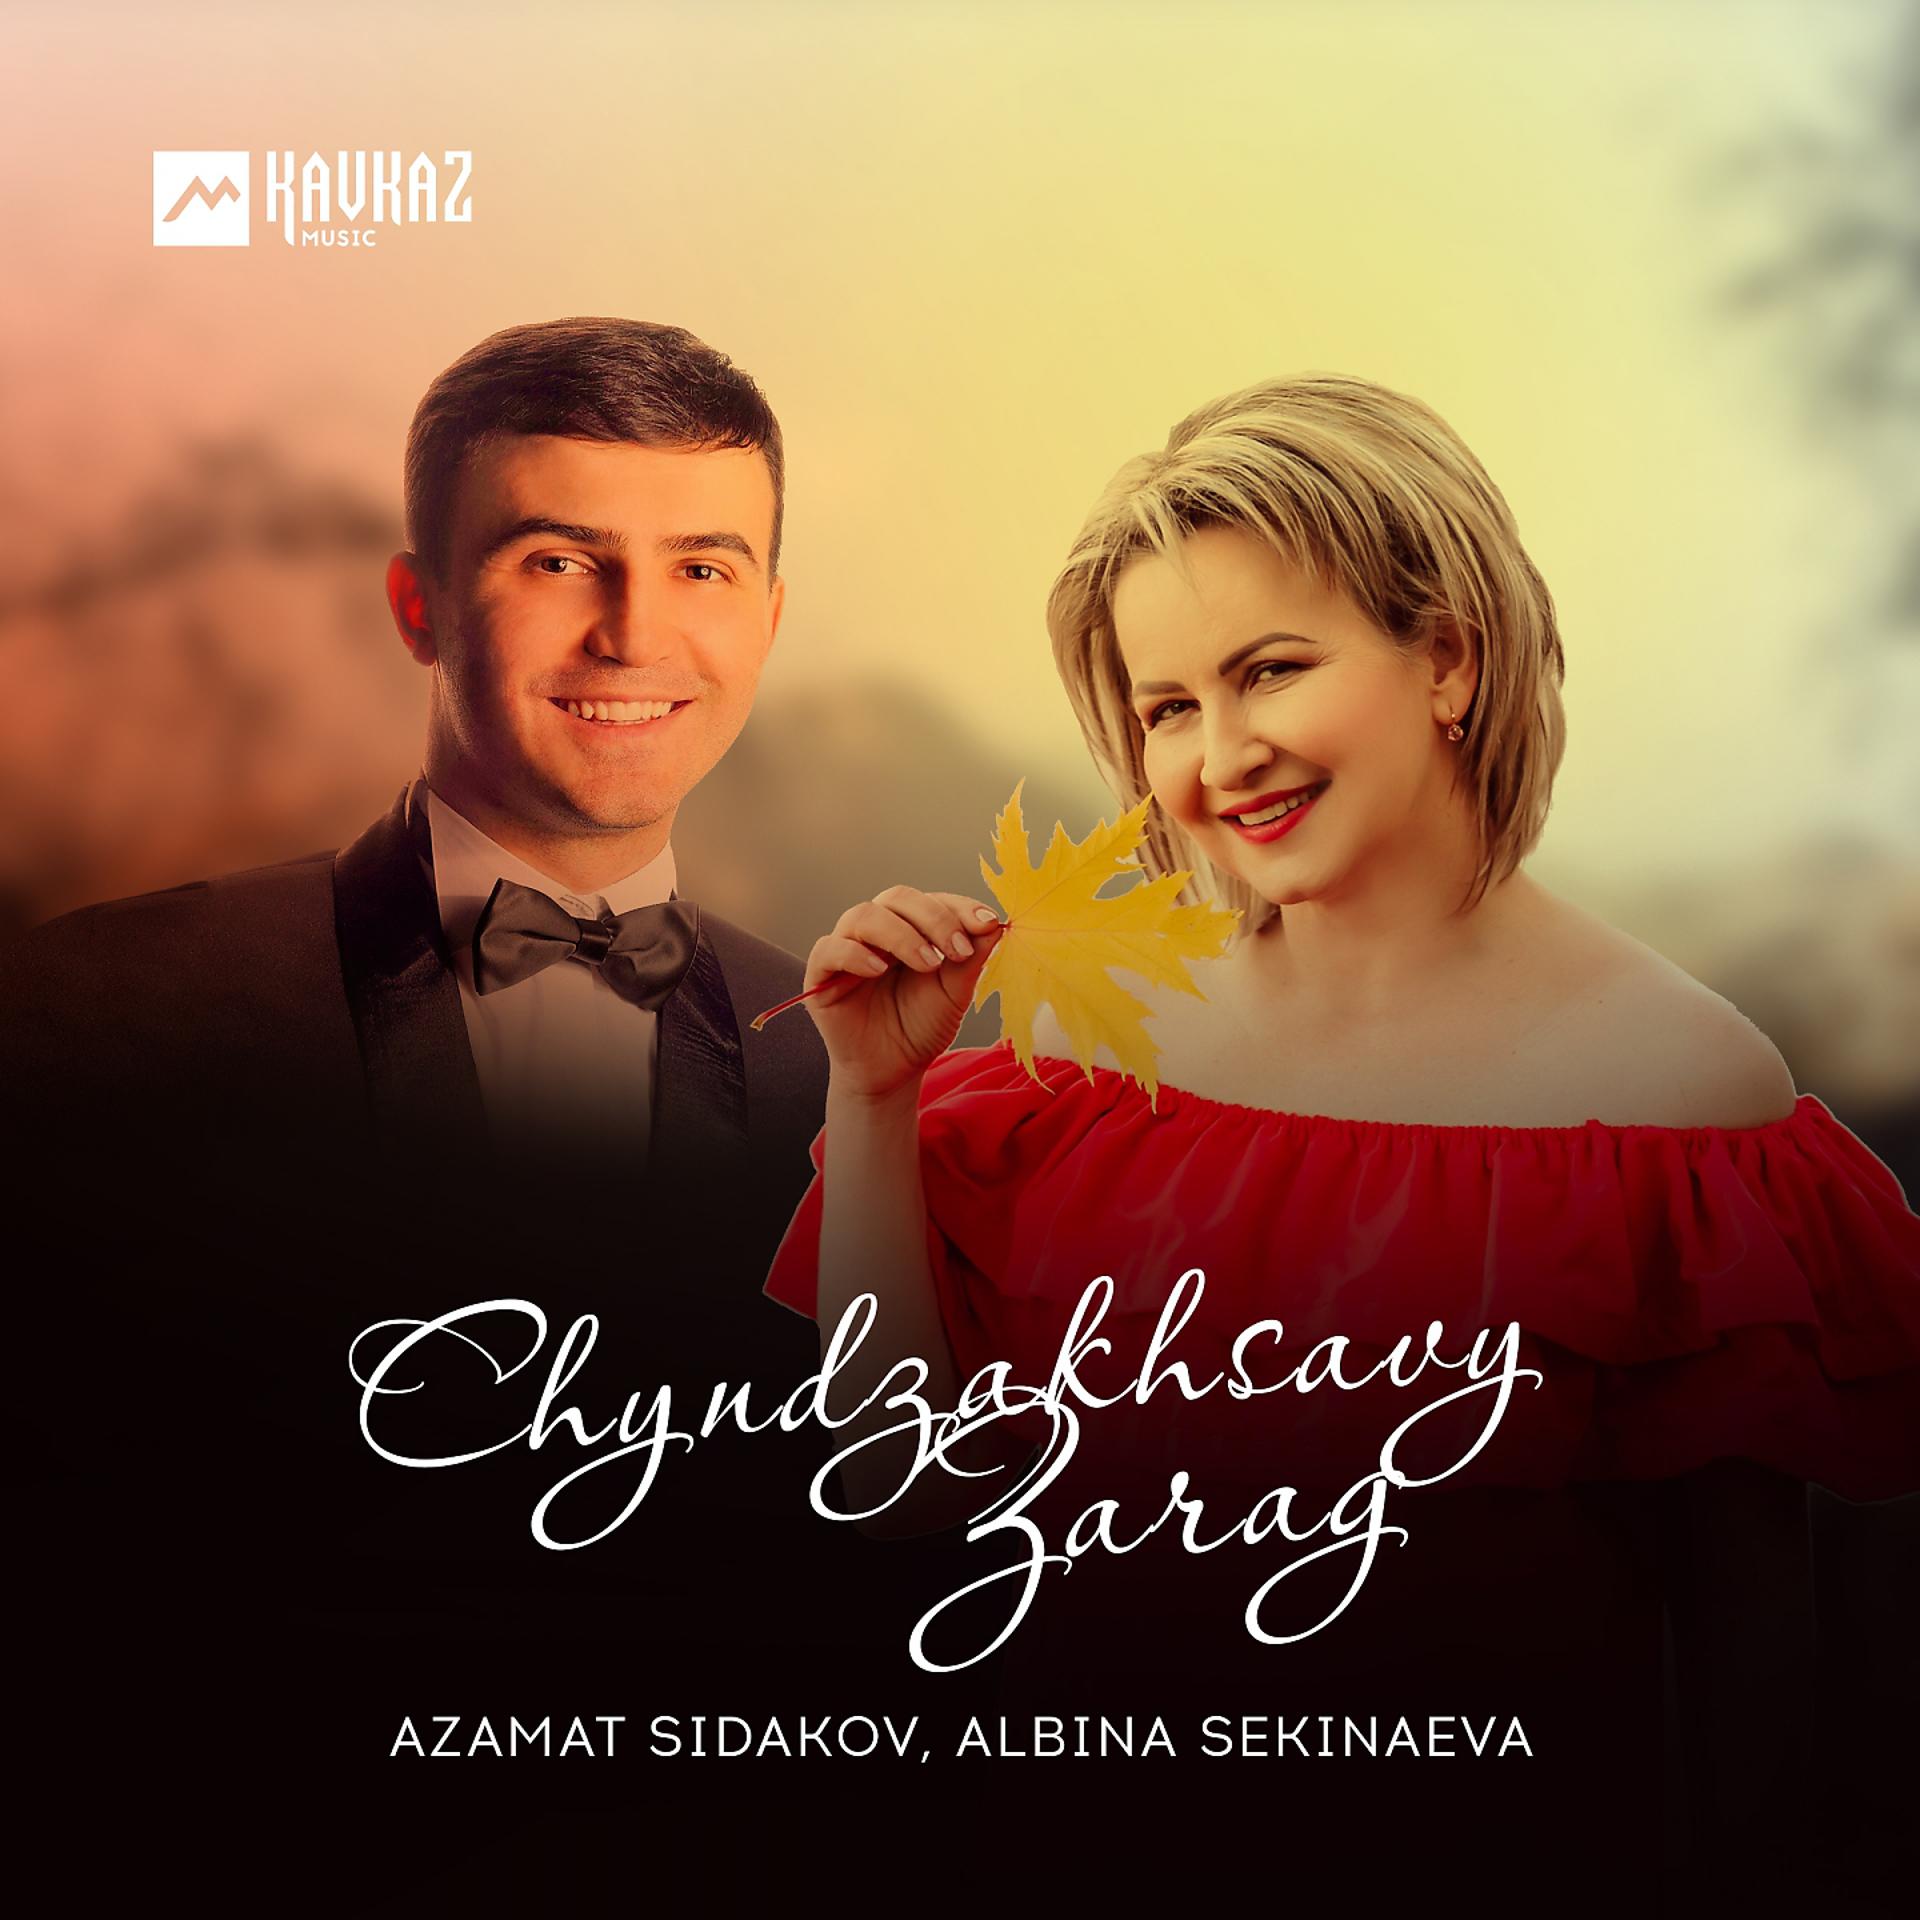 Постер альбома Chyndzakhsavy Zarag